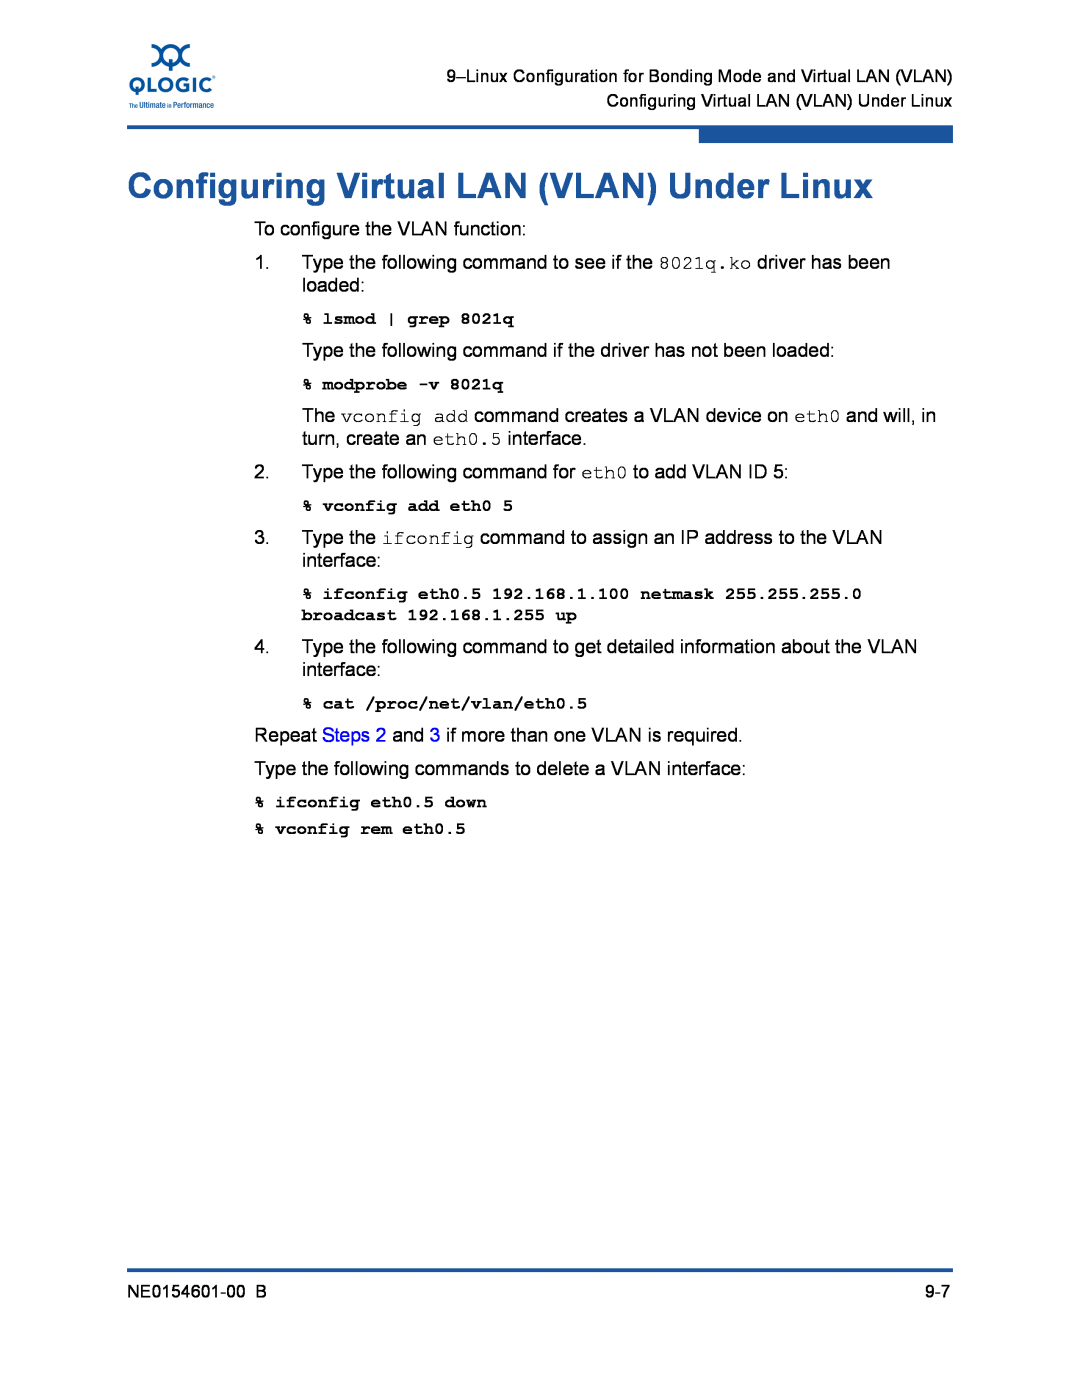 Q-Logic 3000, 3100 manual Configuring Virtual LAN VLAN Under Linux 